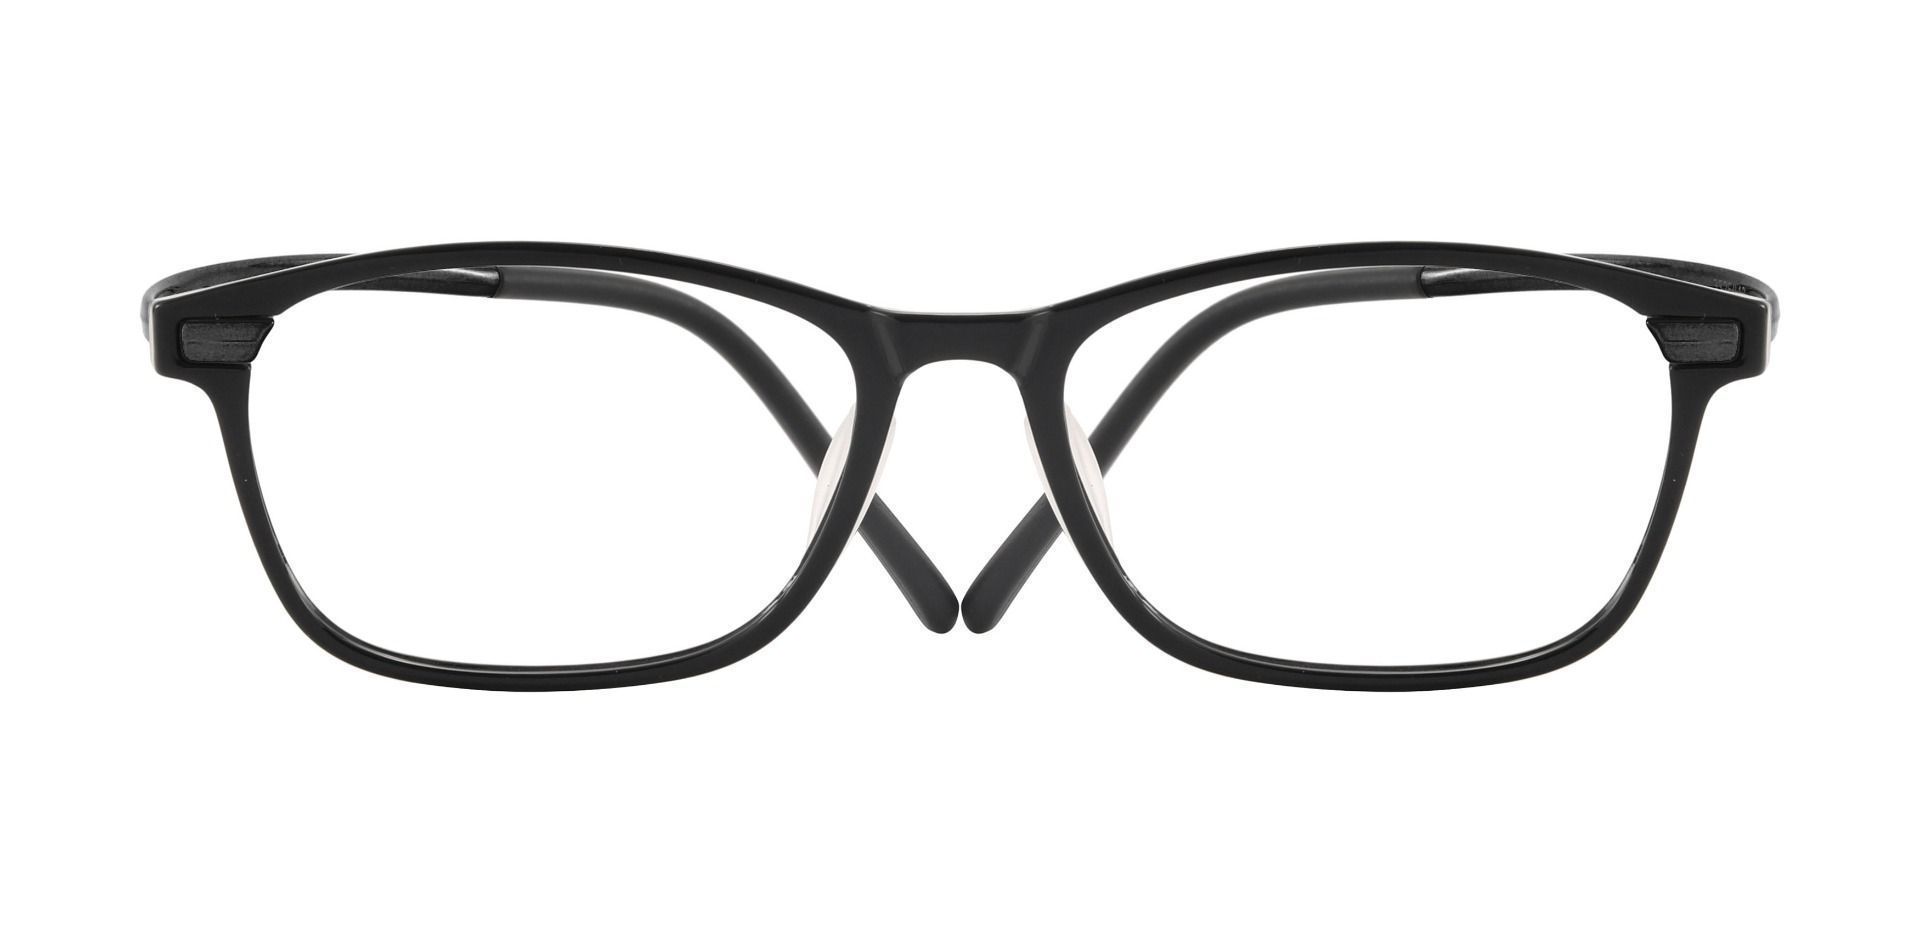 Burr Rectangle Prescription Glasses - Gray | Men's Eyeglasses | Payne ...